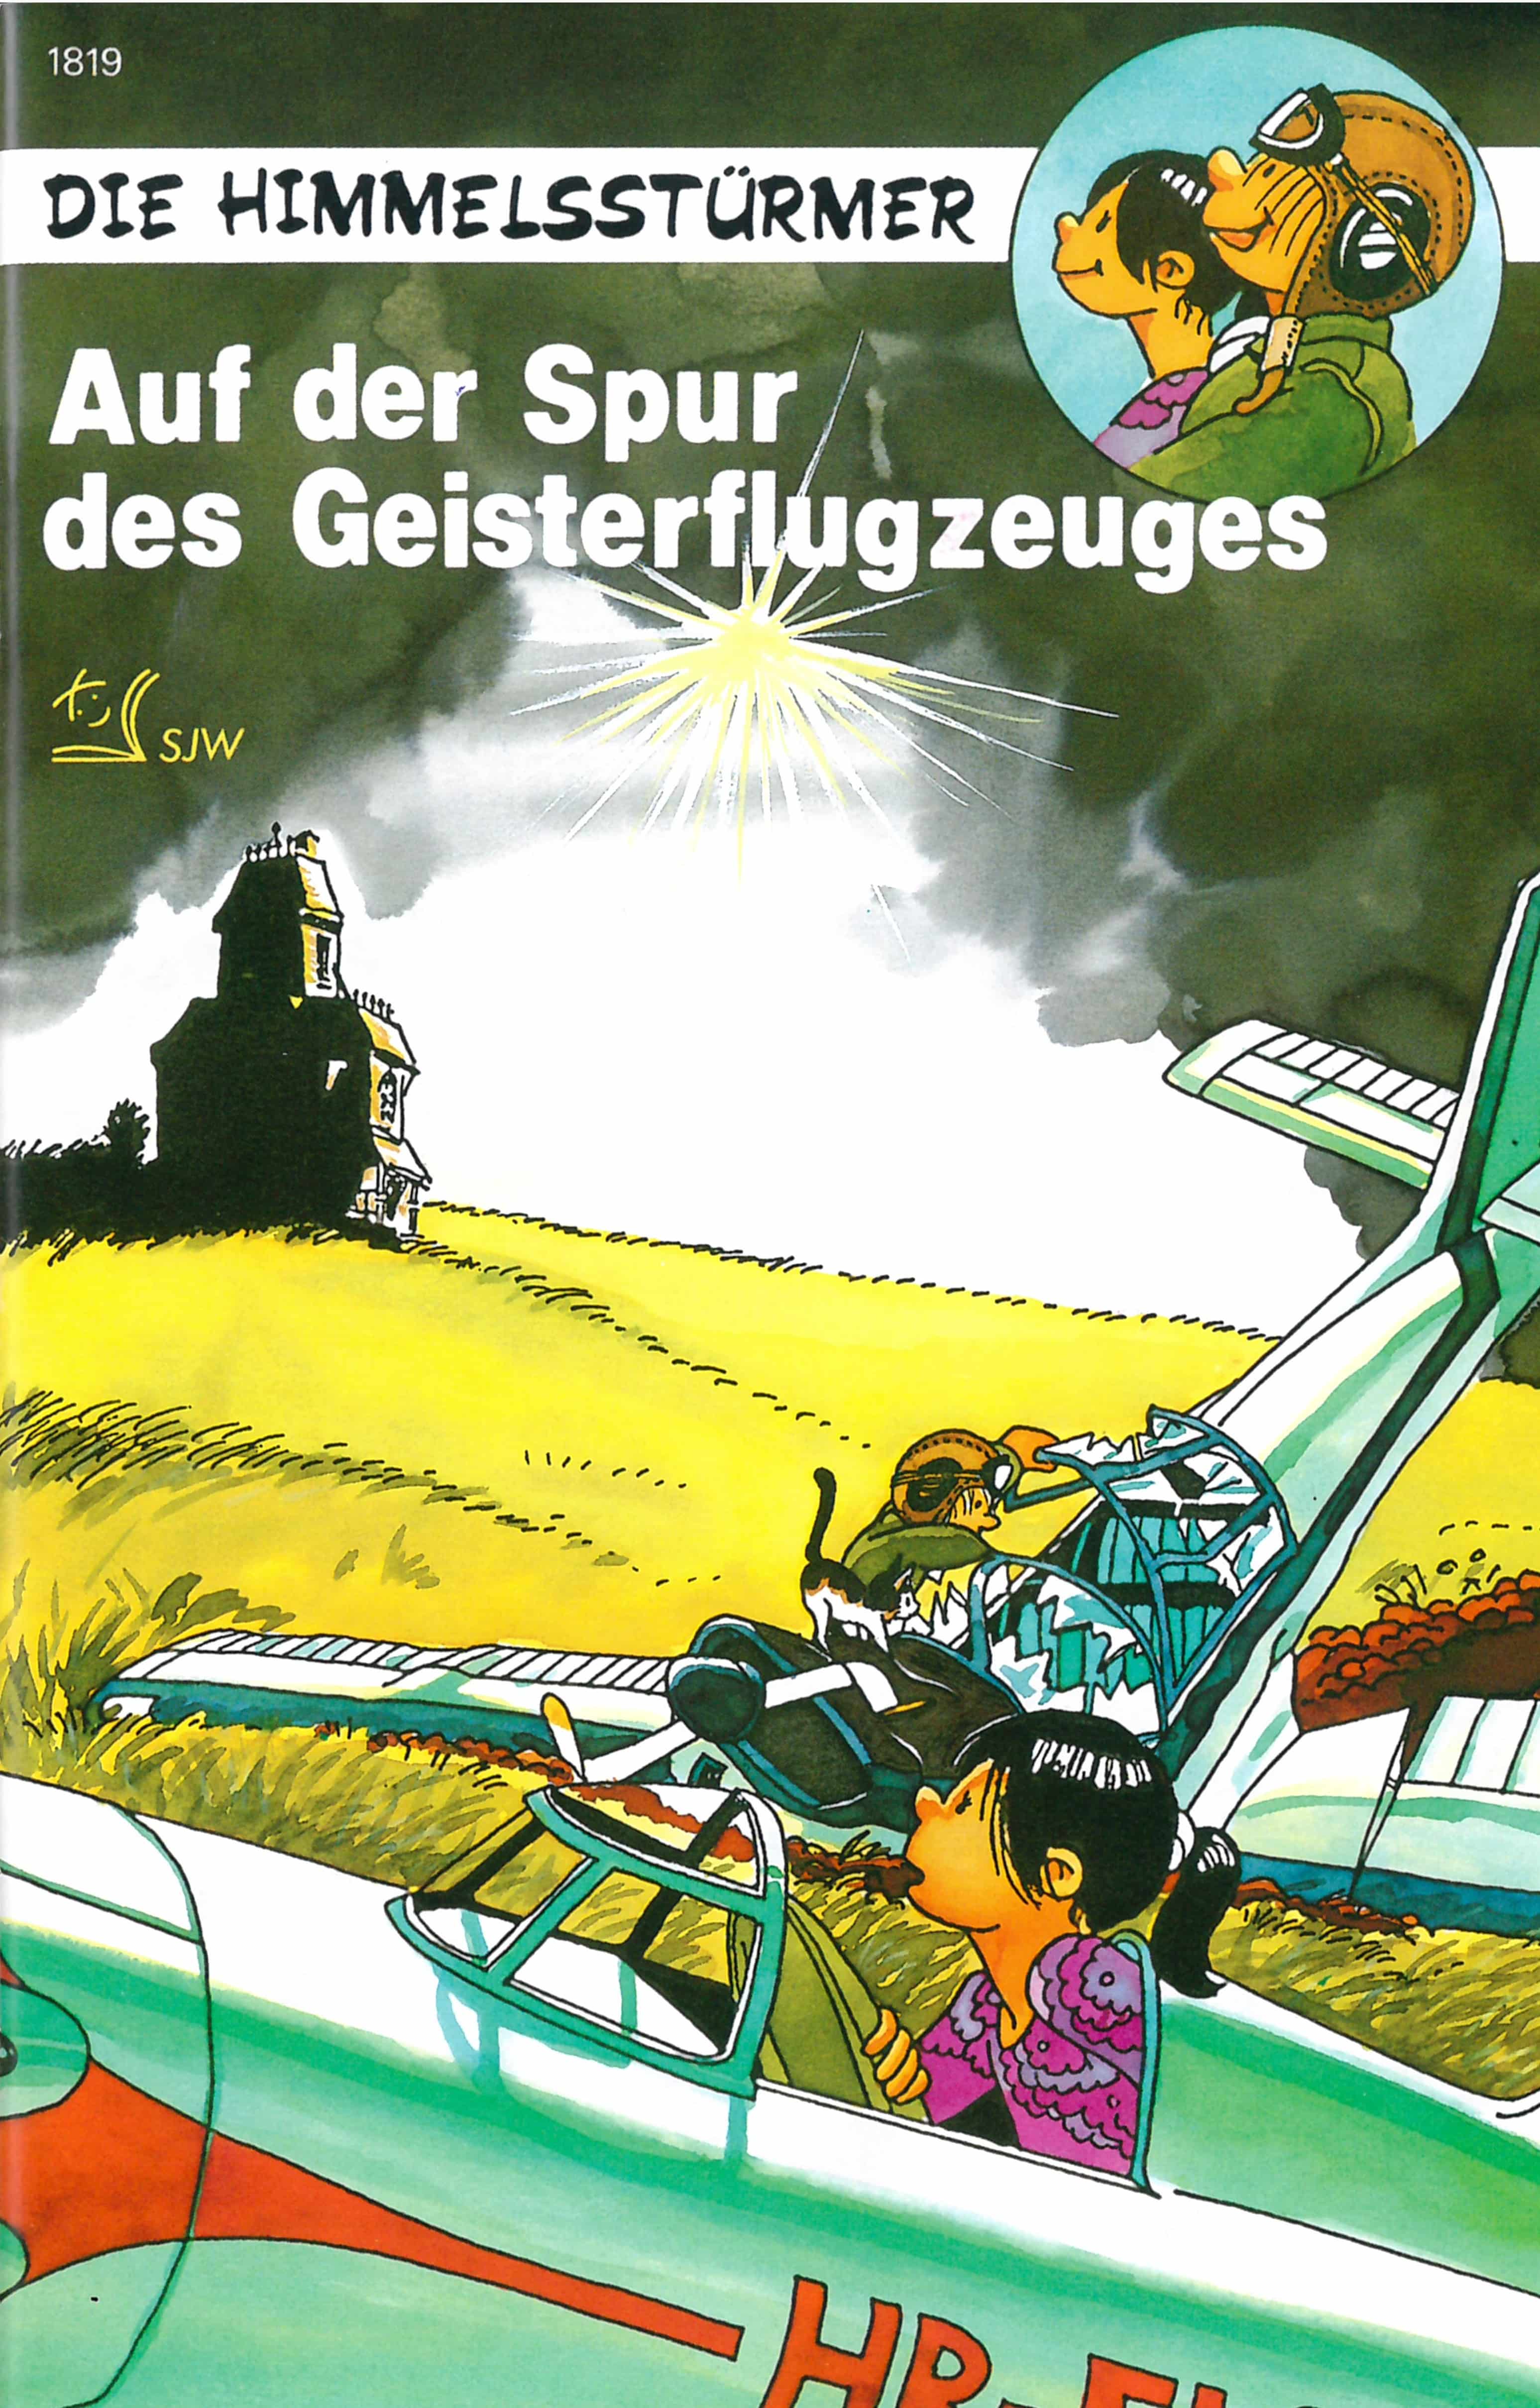 Die Himmelsstuermer – Auf der Spur des Geisterflugzeuges, ein Kinderbuch von Franz Zumstein, SJW Verlag, Comic, Fantasy